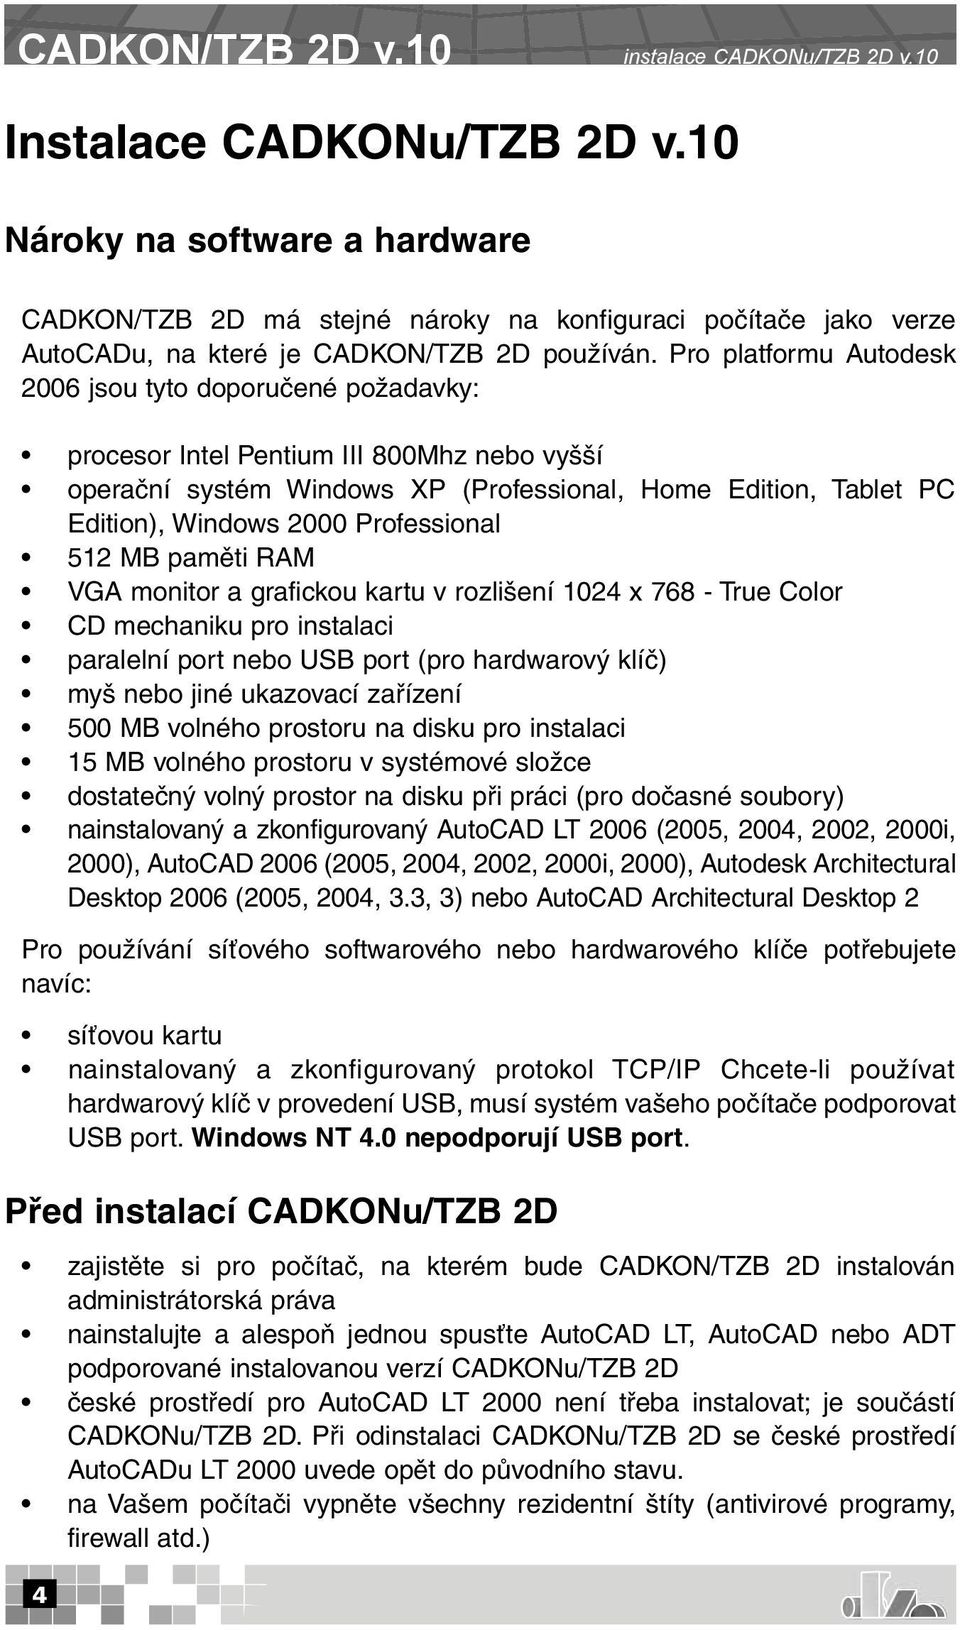 Pro platformu Autodesk 2006 jsou tyto doporučené požadavky: procesor Intel Pentium III 800Mhz nebo vyšší operační systém Windows XP (Professional, Home Edition, Tablet PC Edition), Windows 2000